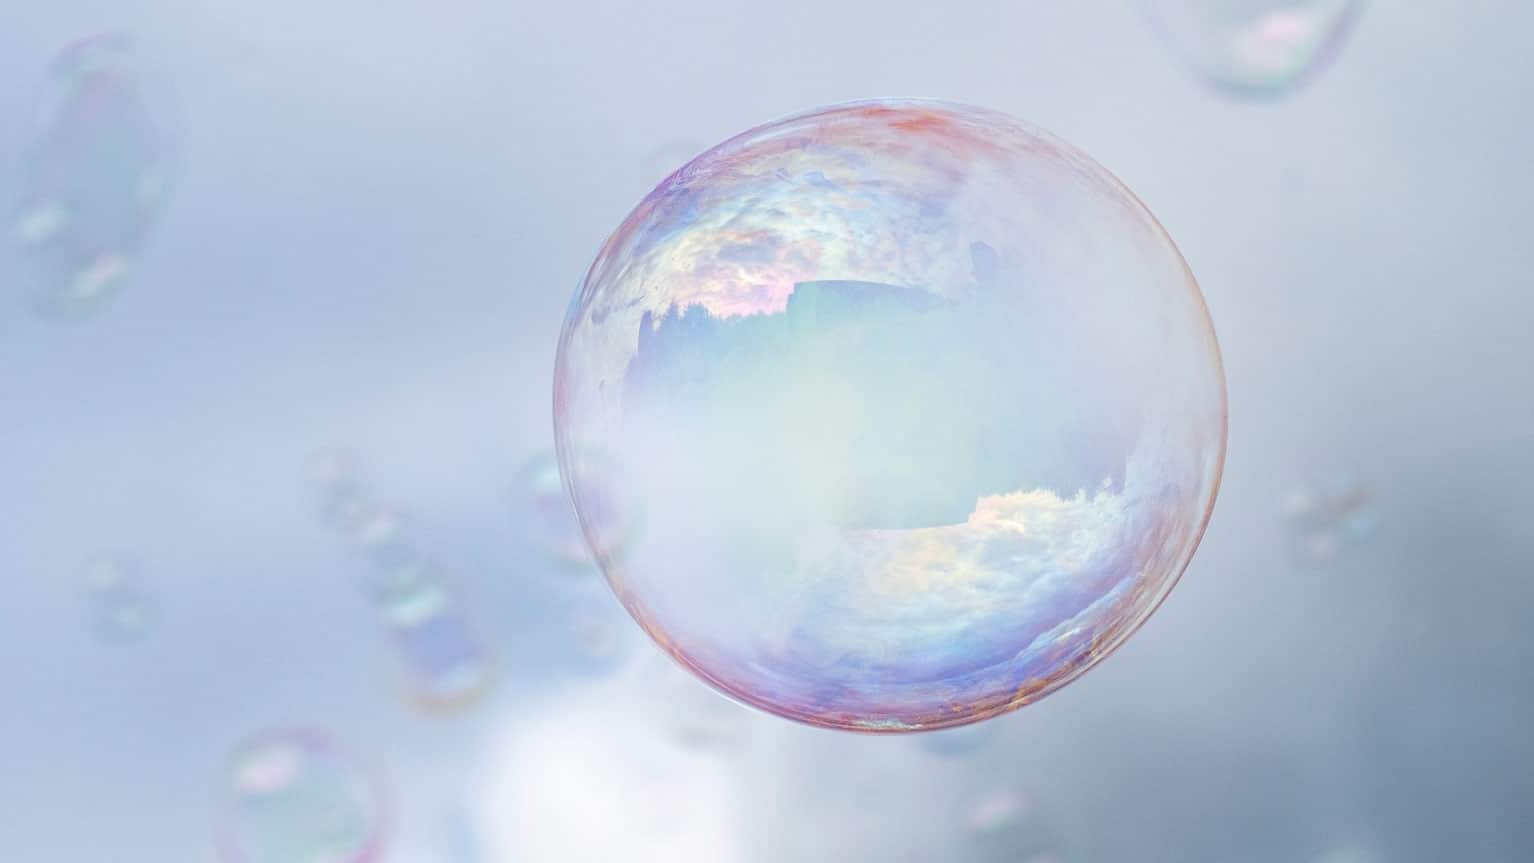 Popping Bubbles  Bubbles photography, Bubbles, Soap bubbles